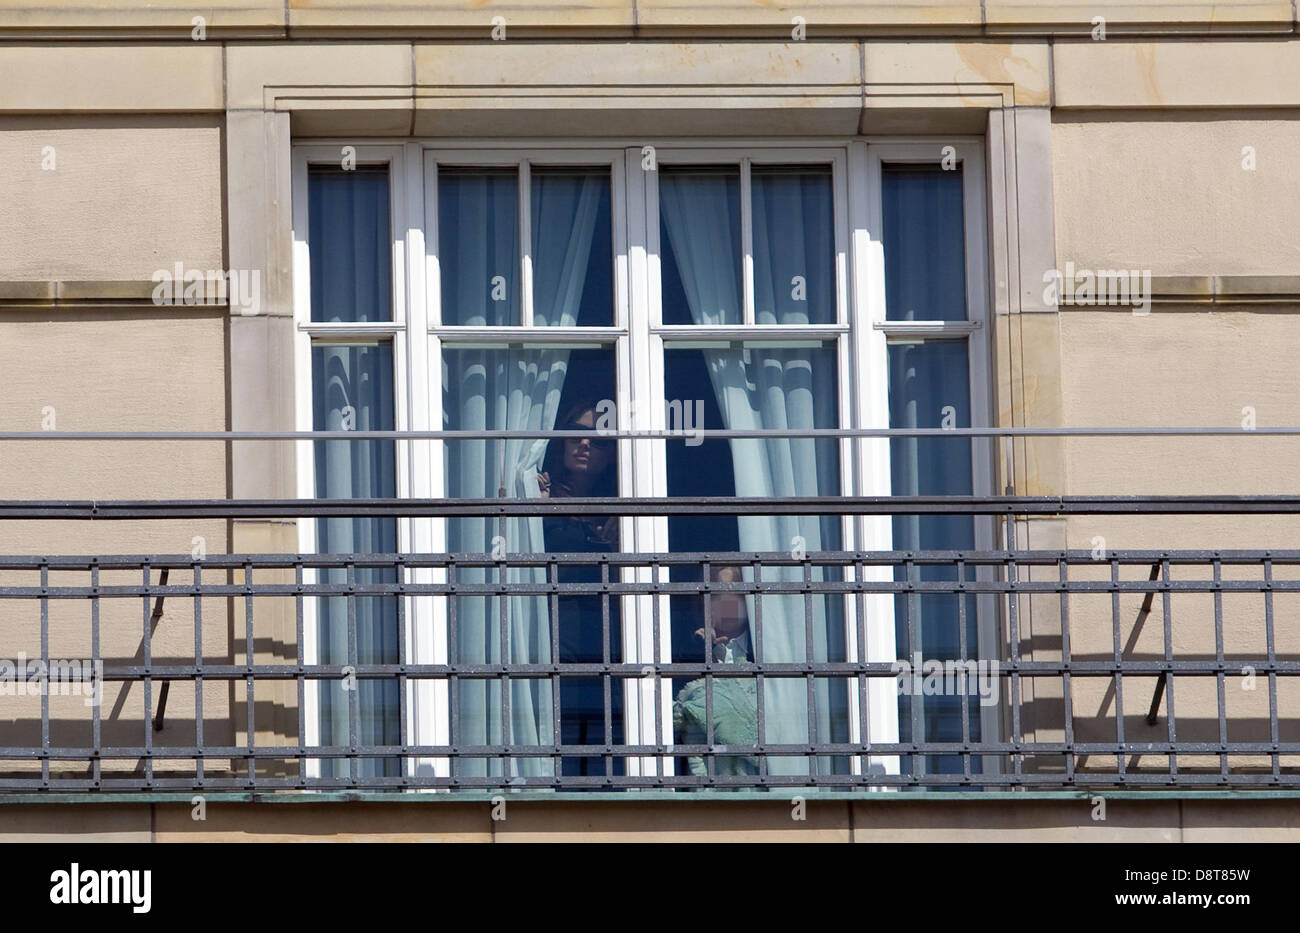 US-amerikanische Schauspielerin Angelina Jolie und ihre Kinder schauen aus dem Fenster in ihrem Zimmer im Hotel Adlon in Berlin, Deutschland, 4. Juni 2013. Foto: BRITTA PEDERSEN (Achtung: die Gesichter der Kinder wurden aus rechtlichen Gründen gepixelten.) Stockfoto